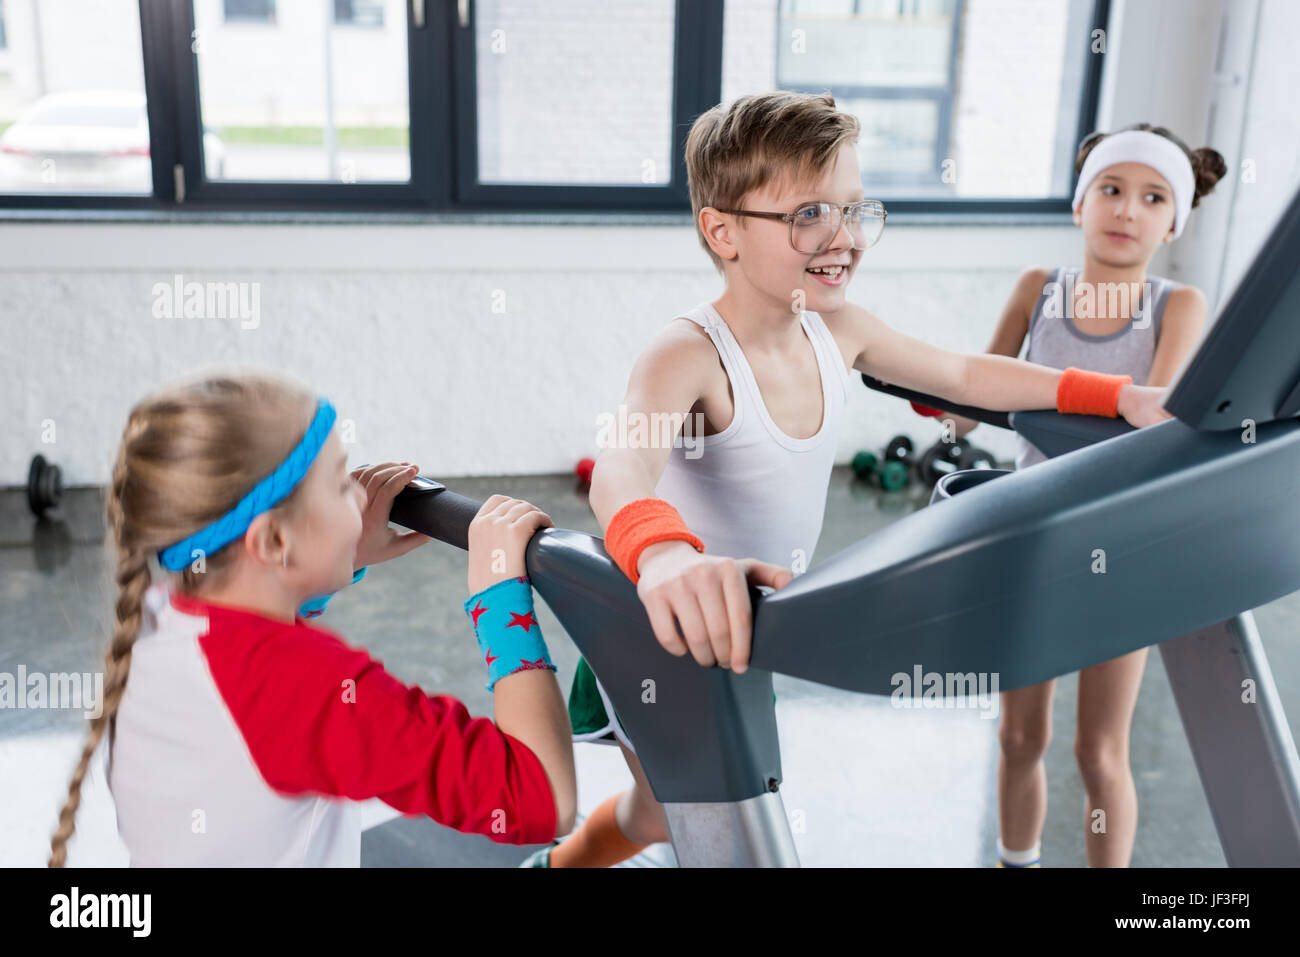 Lustige Kinder Sportbekleidung Training auf Laufband im Fitnessstudio  zusammen, Kinder-sport-Konzept Stockfotografie - Alamy